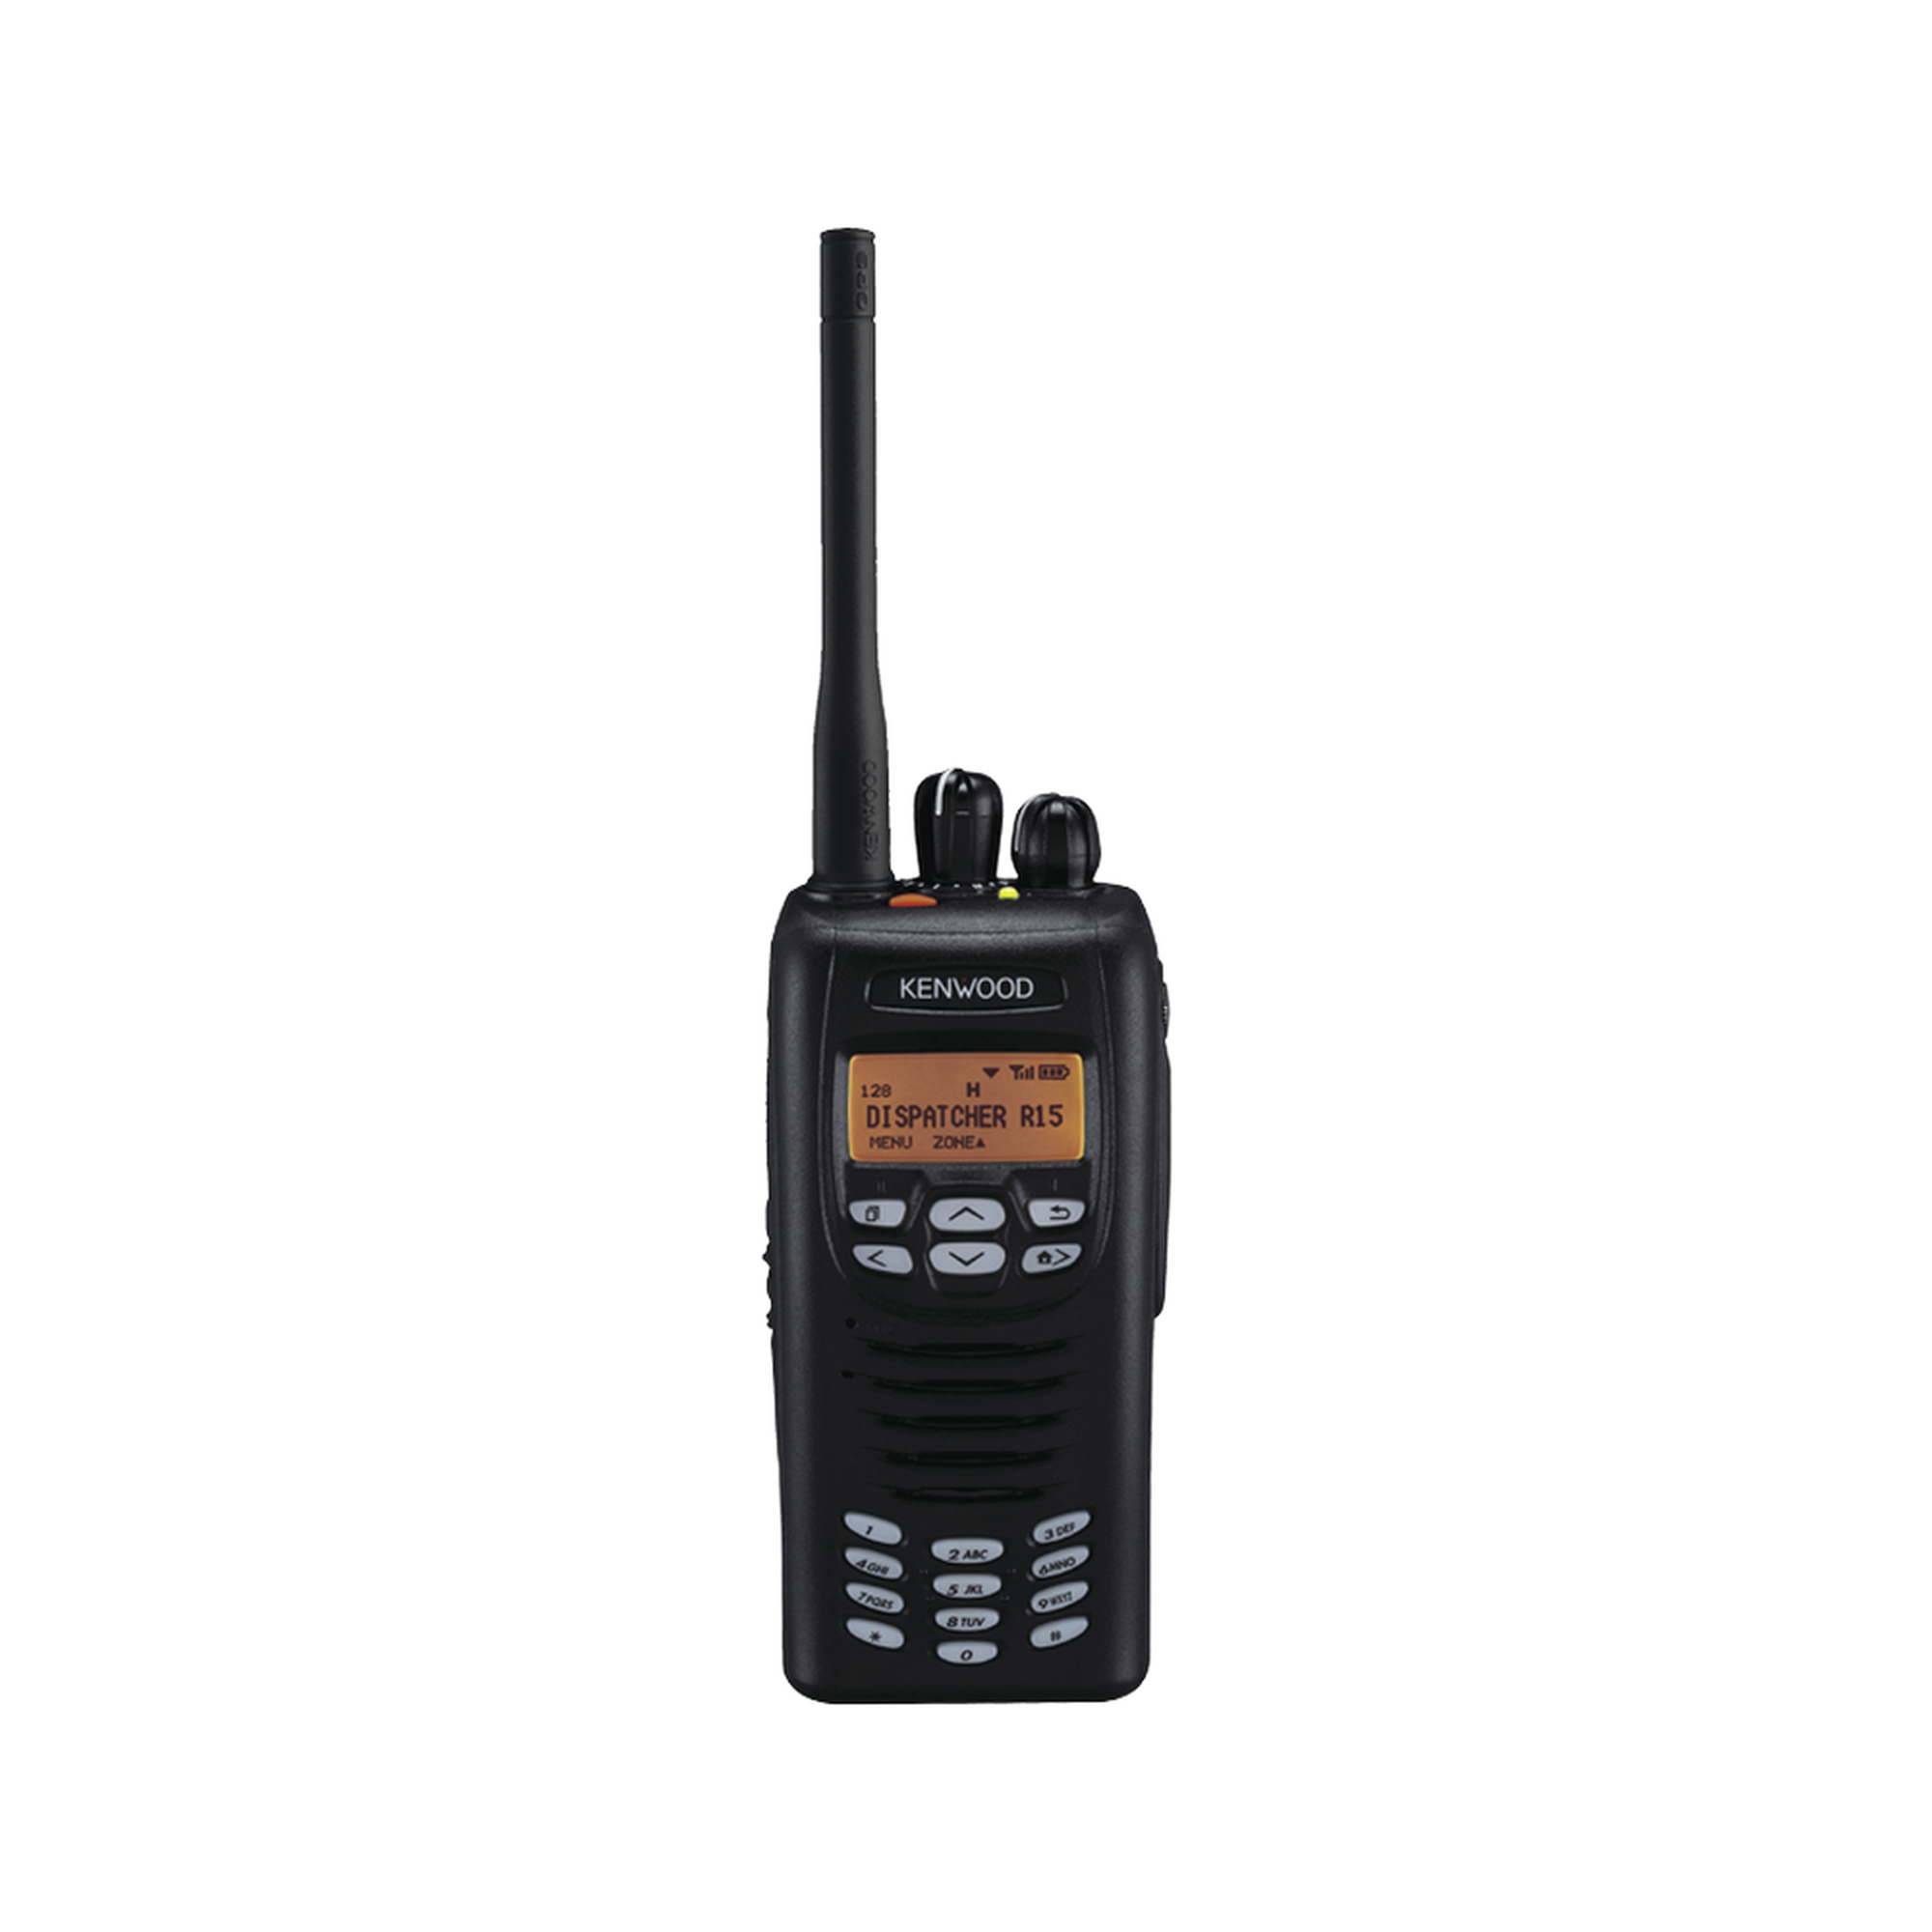 450-520 MHz, DTMF, NXDN, 5 Watts, 512 canales, Encriptación, GPS, Incluye batería, cargador, antena y clip